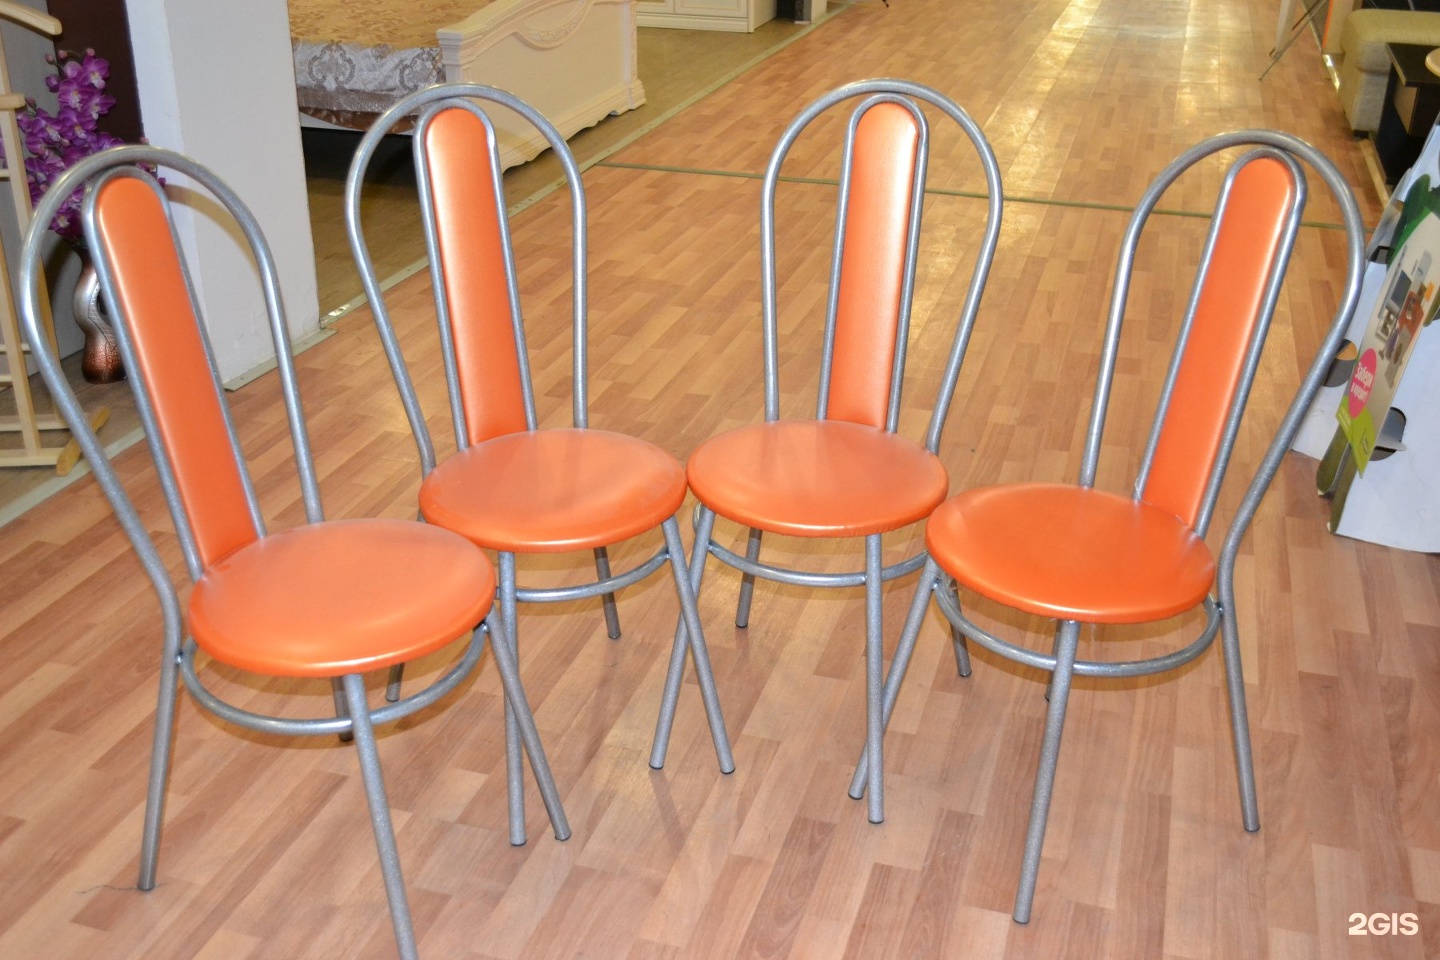 Купить кухонный стул на авито. Венские столы и стулья. Форма стульев для кухни. Стул форма. Стулья с оранжевой обивкой.